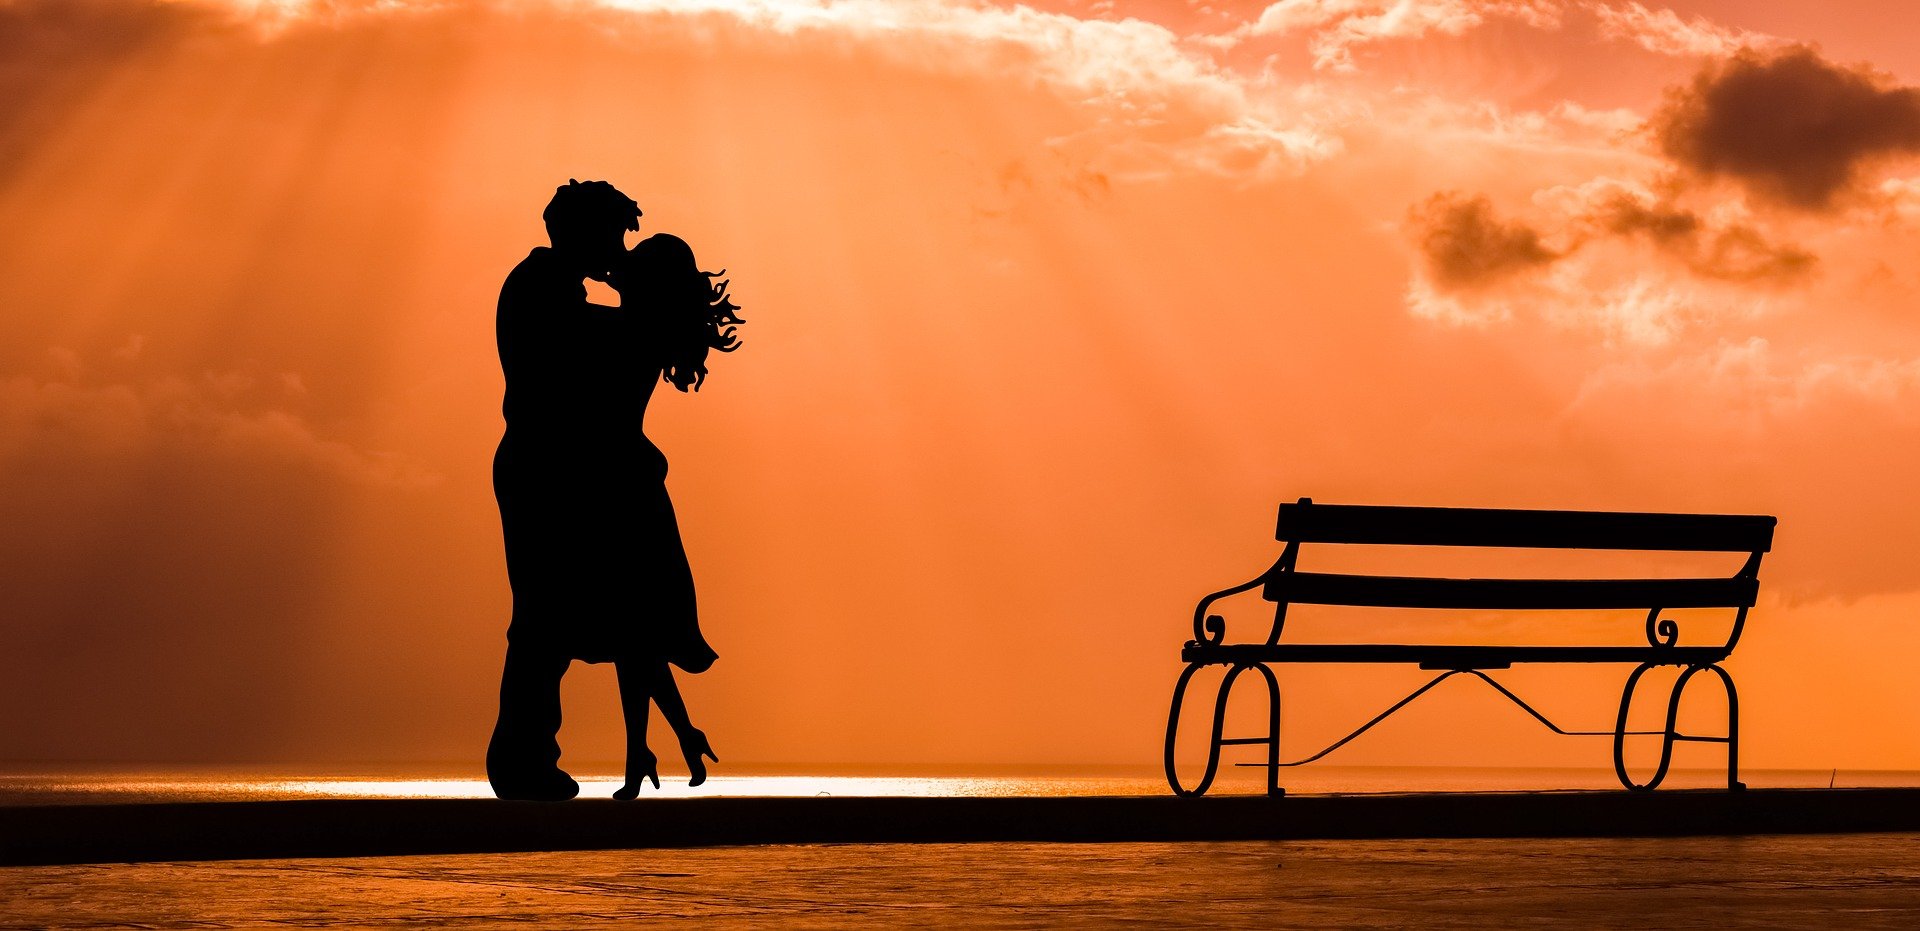 Silhouette Paar küssend mit Bank am meer vor orangenem Sonnenuntergang